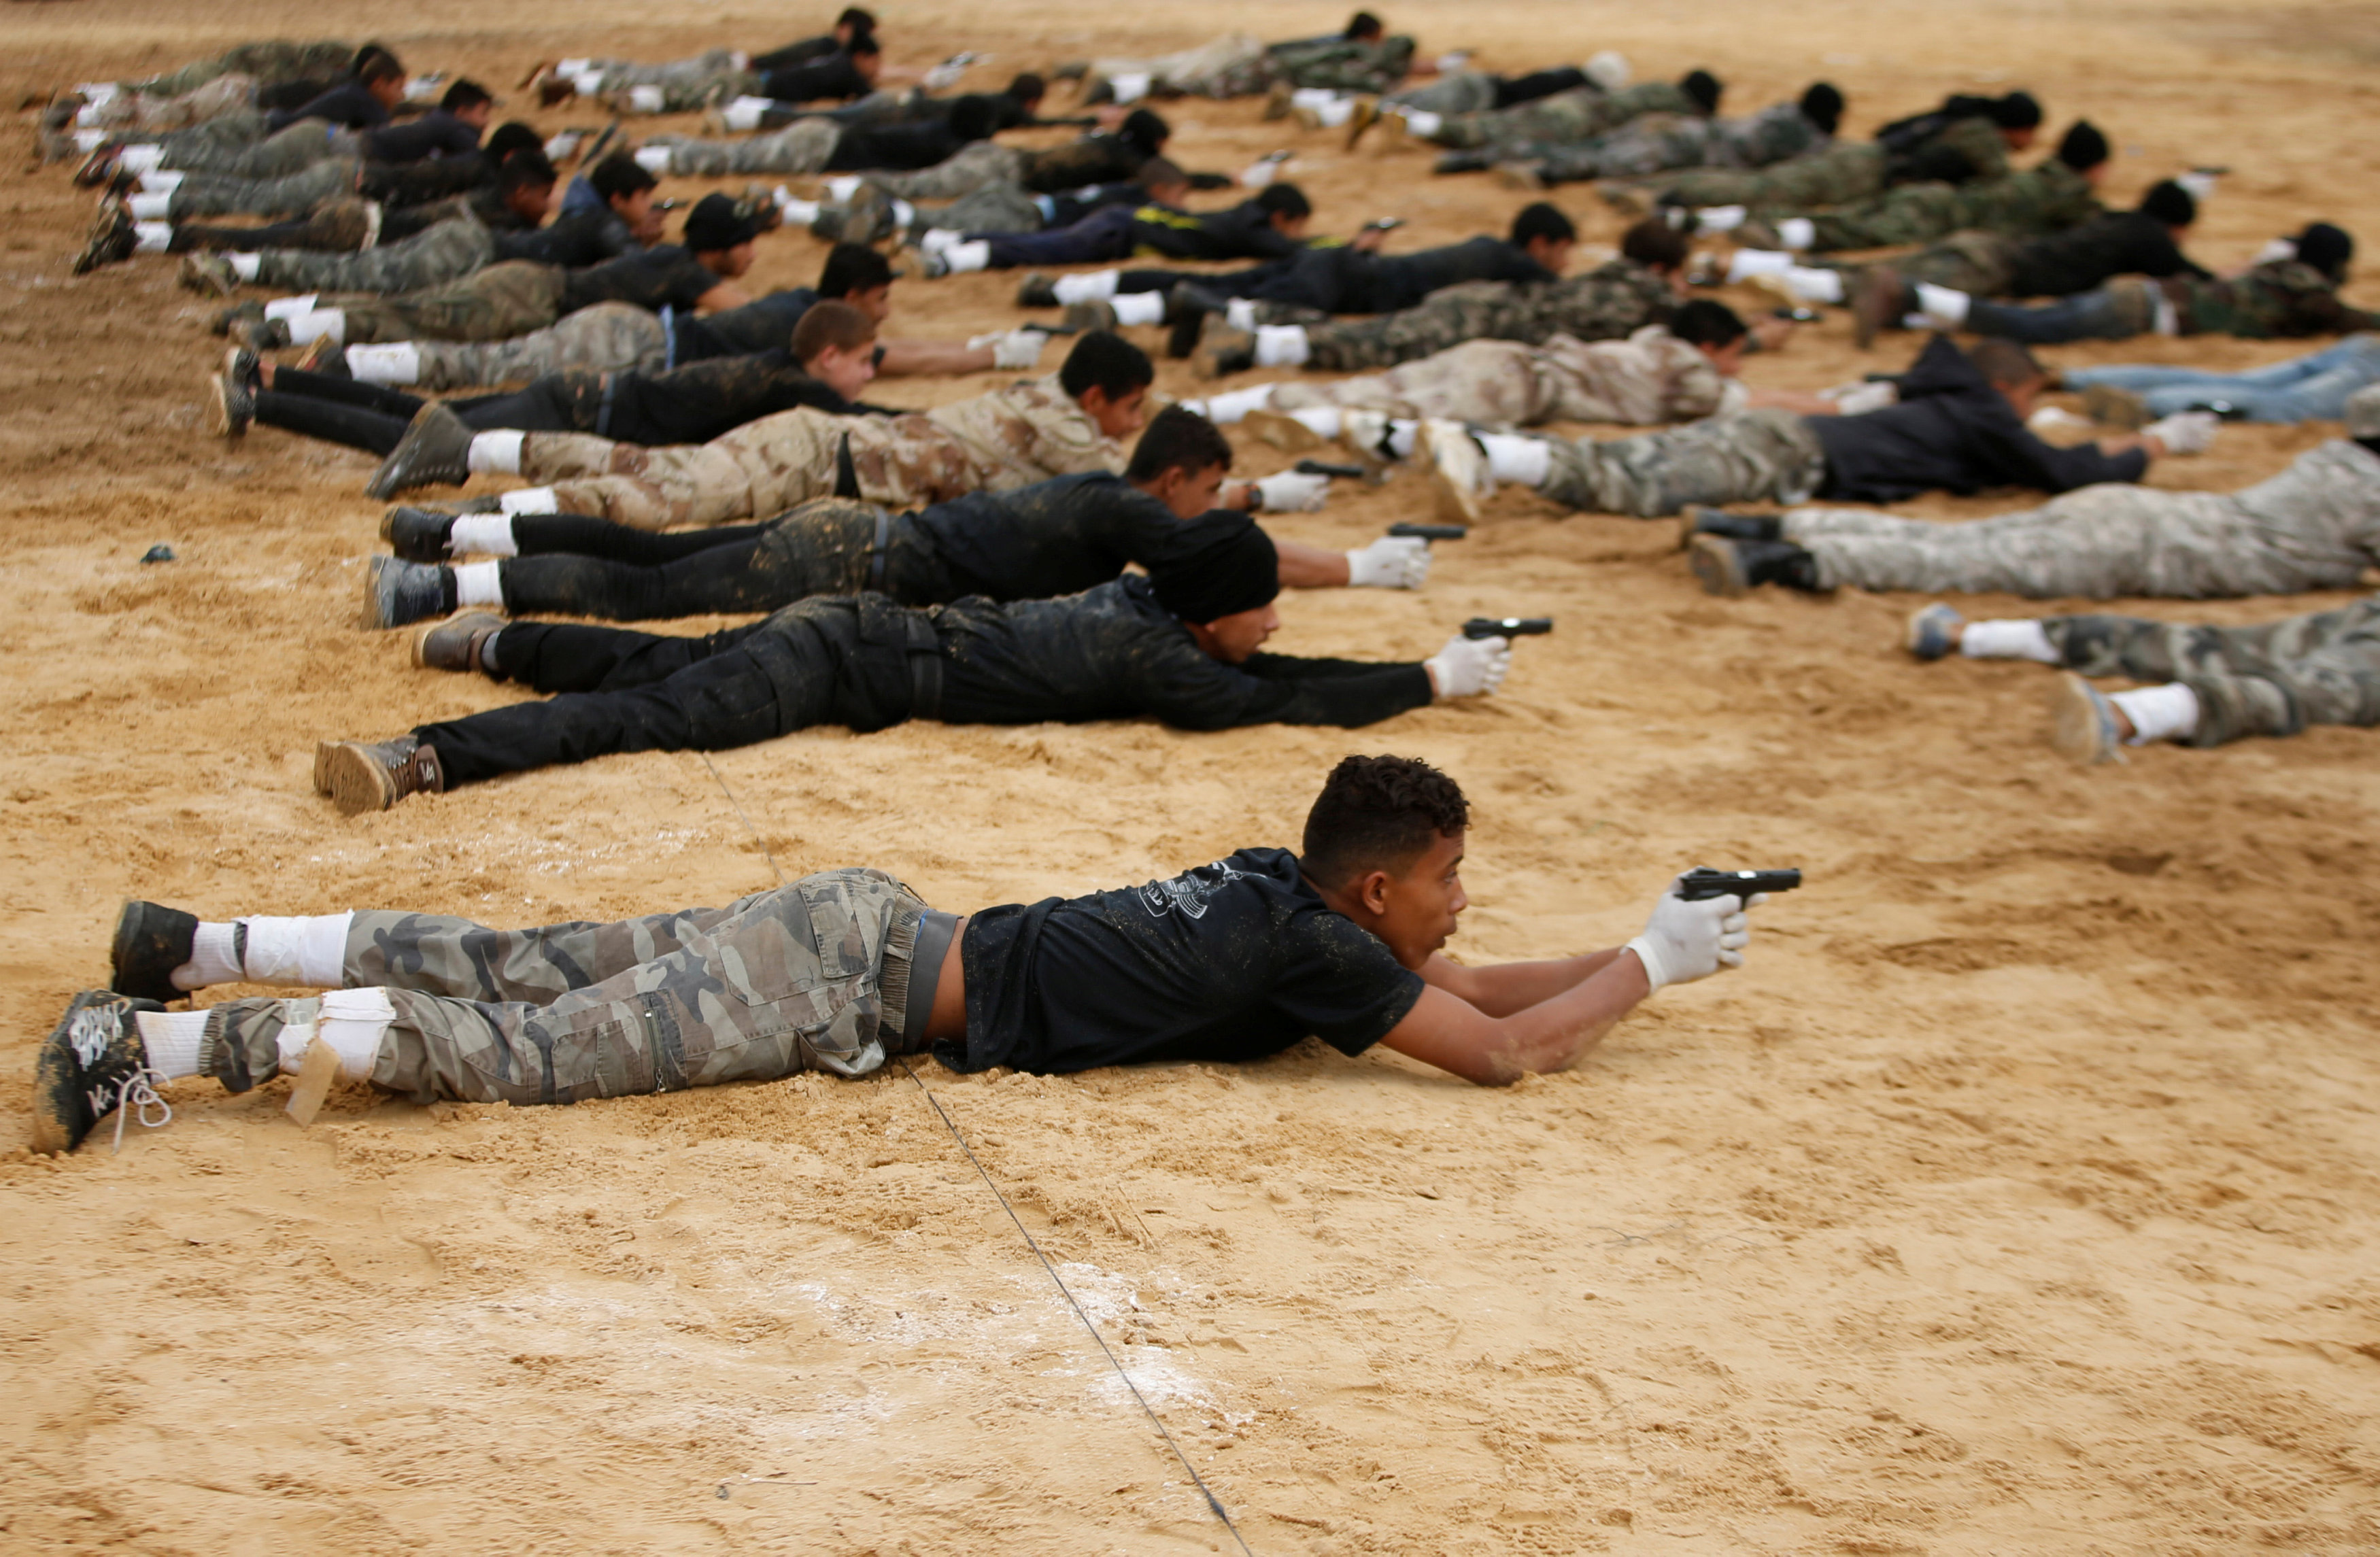 حماس تستغل الأطفال فى تدريبات عسكرية  - رويترز